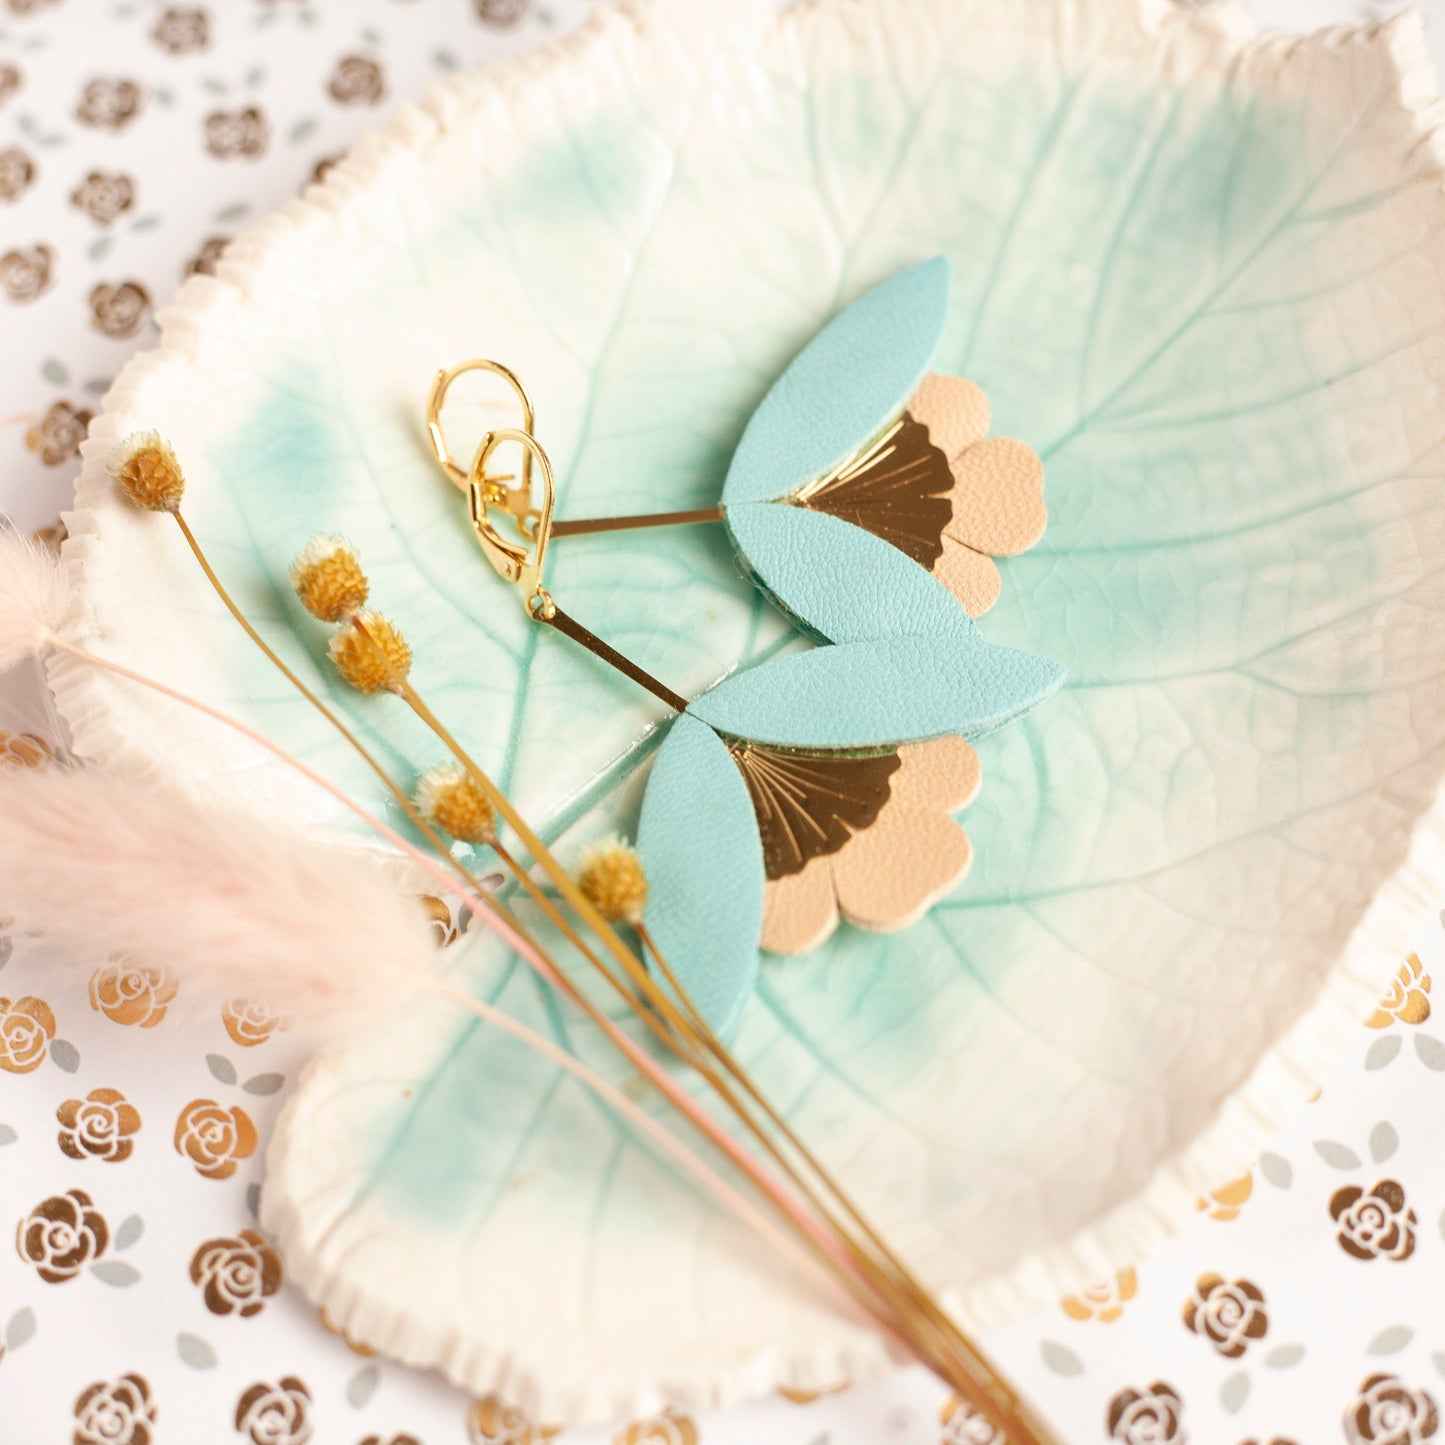 Ginkgo Flower earrings in blue and beige leather